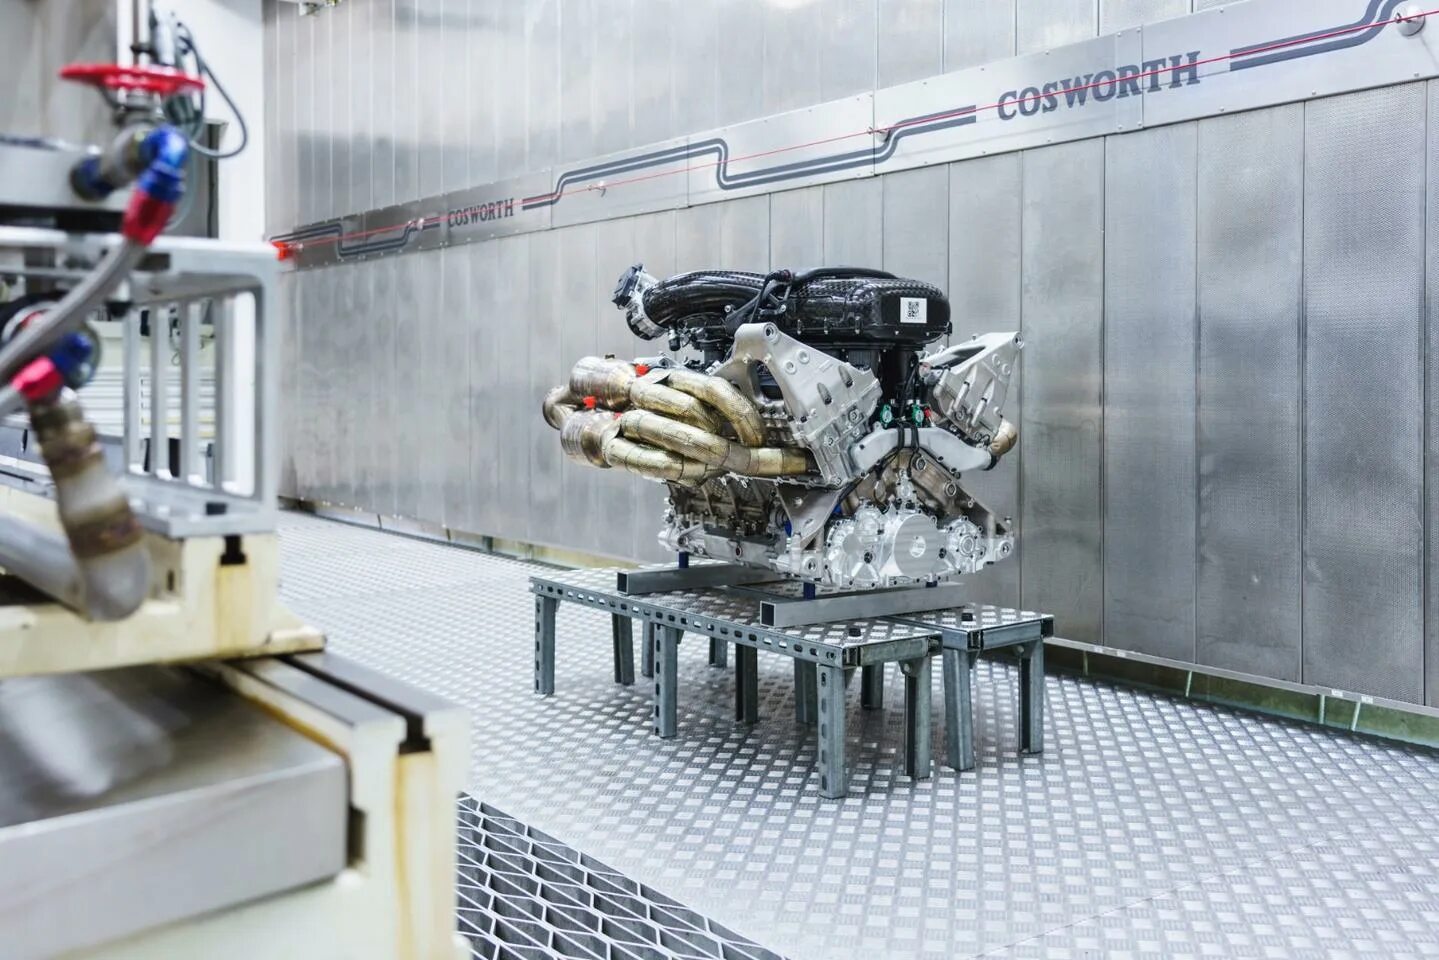 10 000 л с. Aston Martin Valkyrie v12. Aston Martin Valkyrie двигатель. Aston Martin Valkyrie engine. Engine v12 Aston Martin Valkyrie.